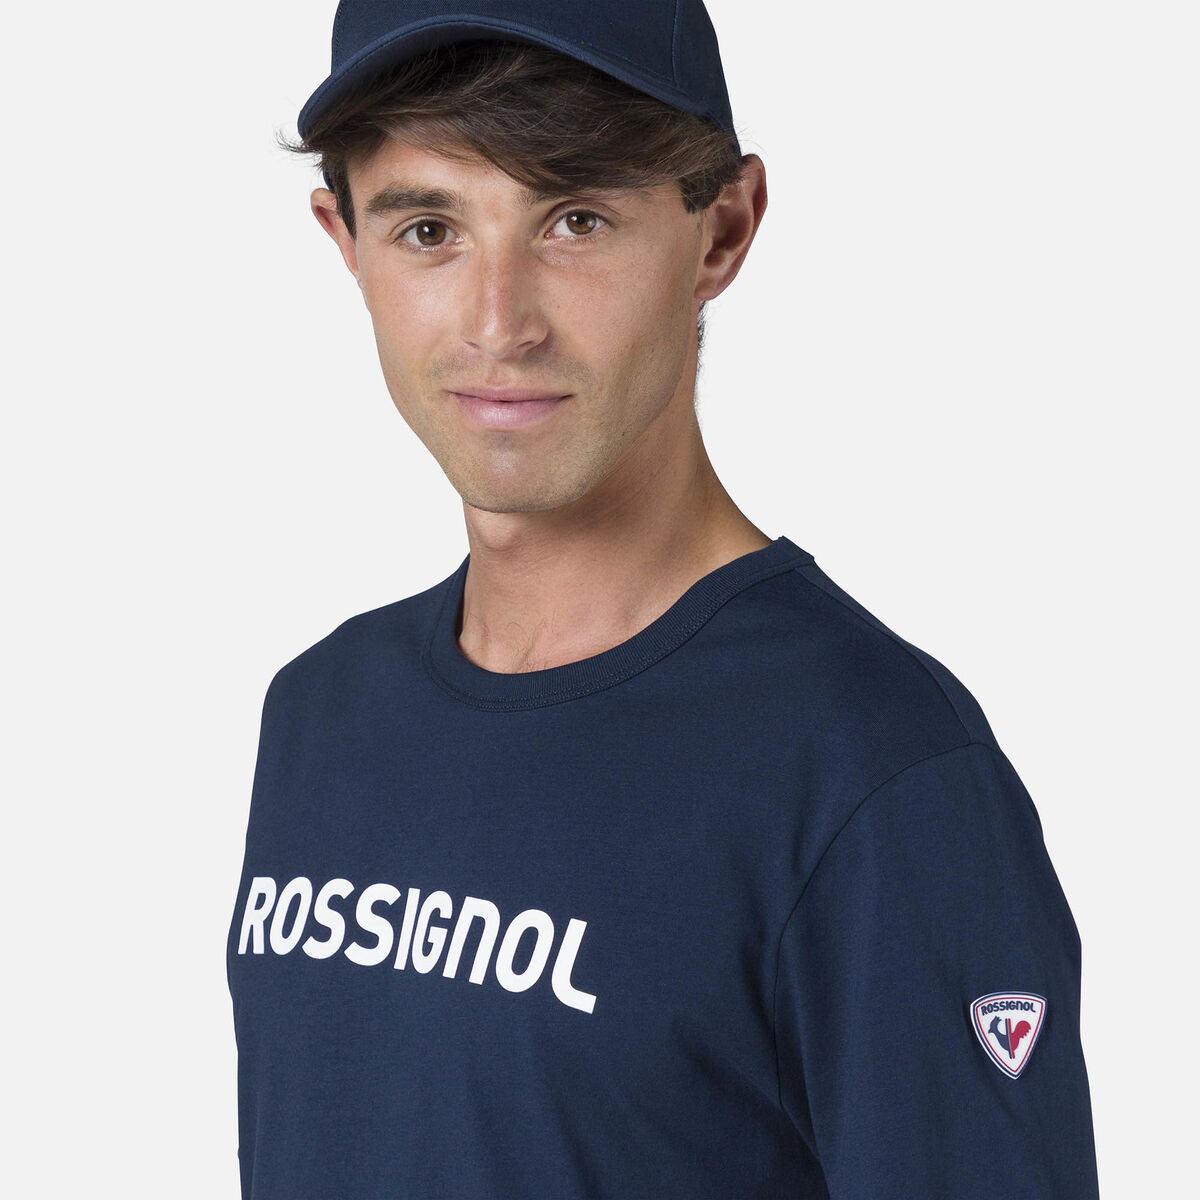 T-shirt Rossignol Homme